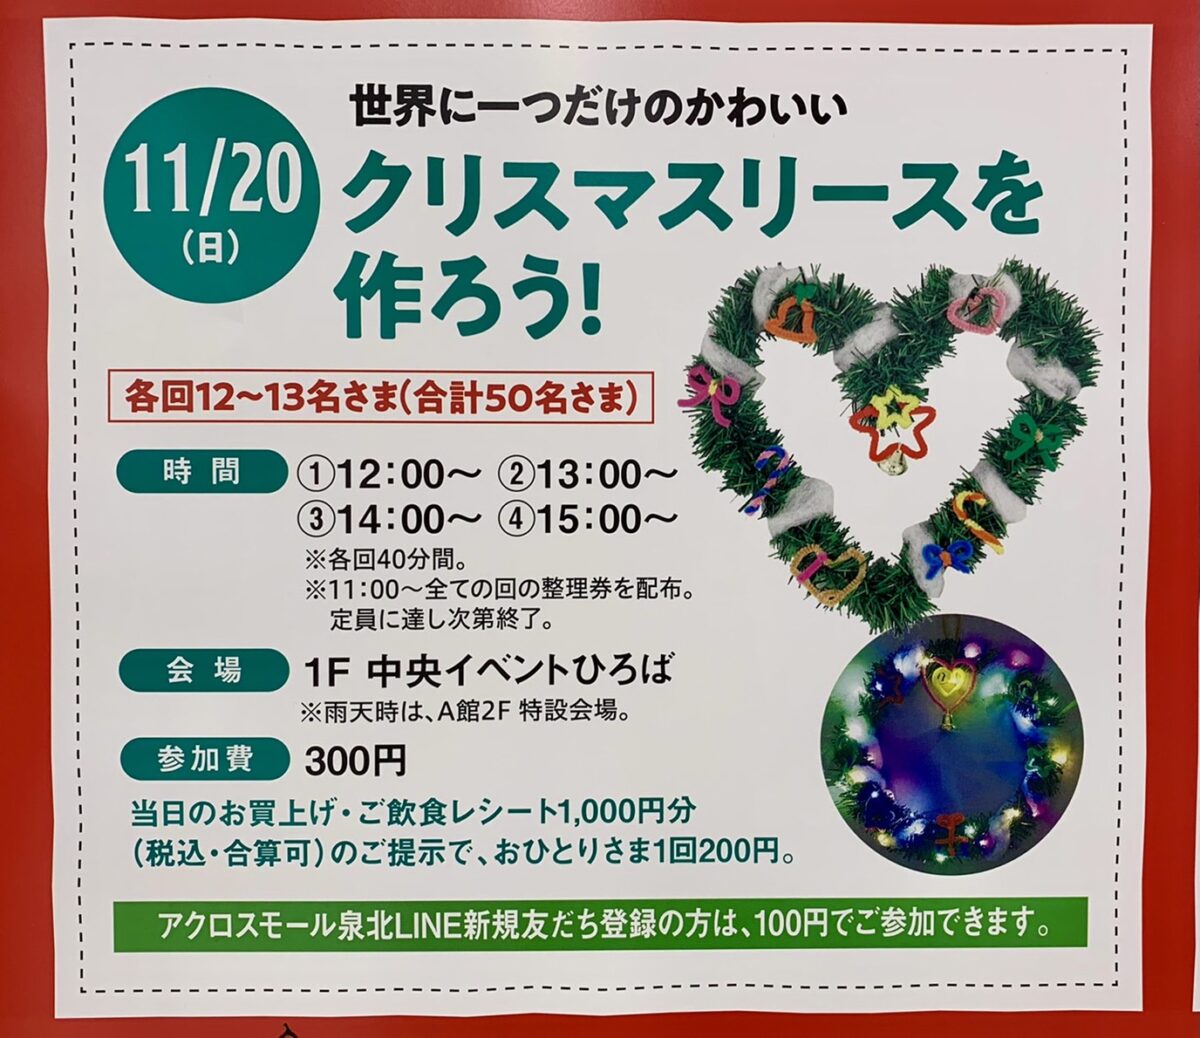 【イベント】2022.11/20(日)開催★堺市南区･アクロスモール泉北でクリスマスイベントを楽しもう♪『世界に一つだけのかわいいクリスマスリースを作ろう！』開催！：